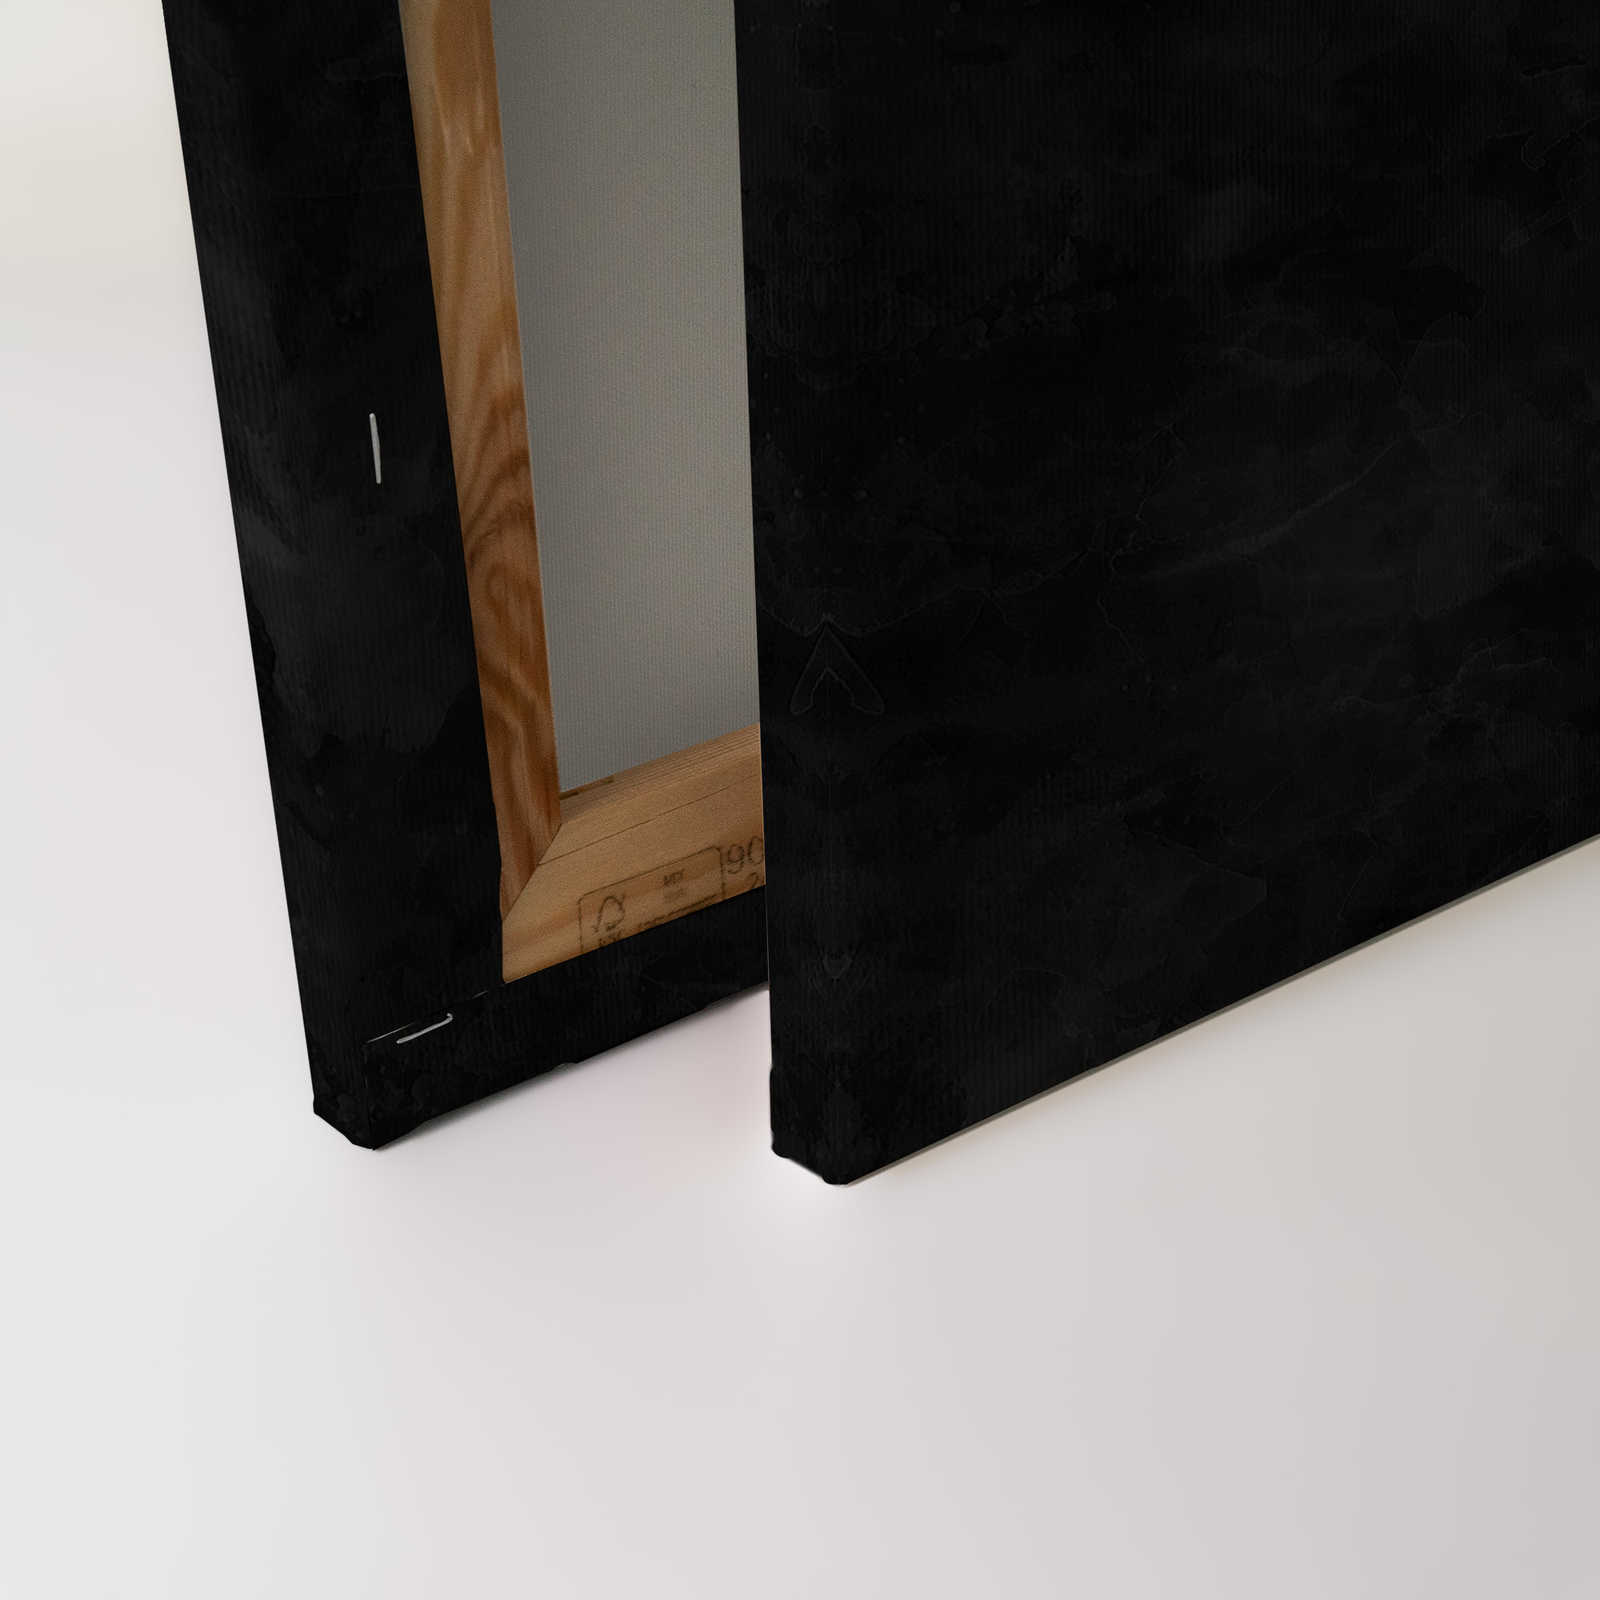             Toile noire et blanche Pieuvre & look tableau noir - 0,90 m x 0,60 m
        